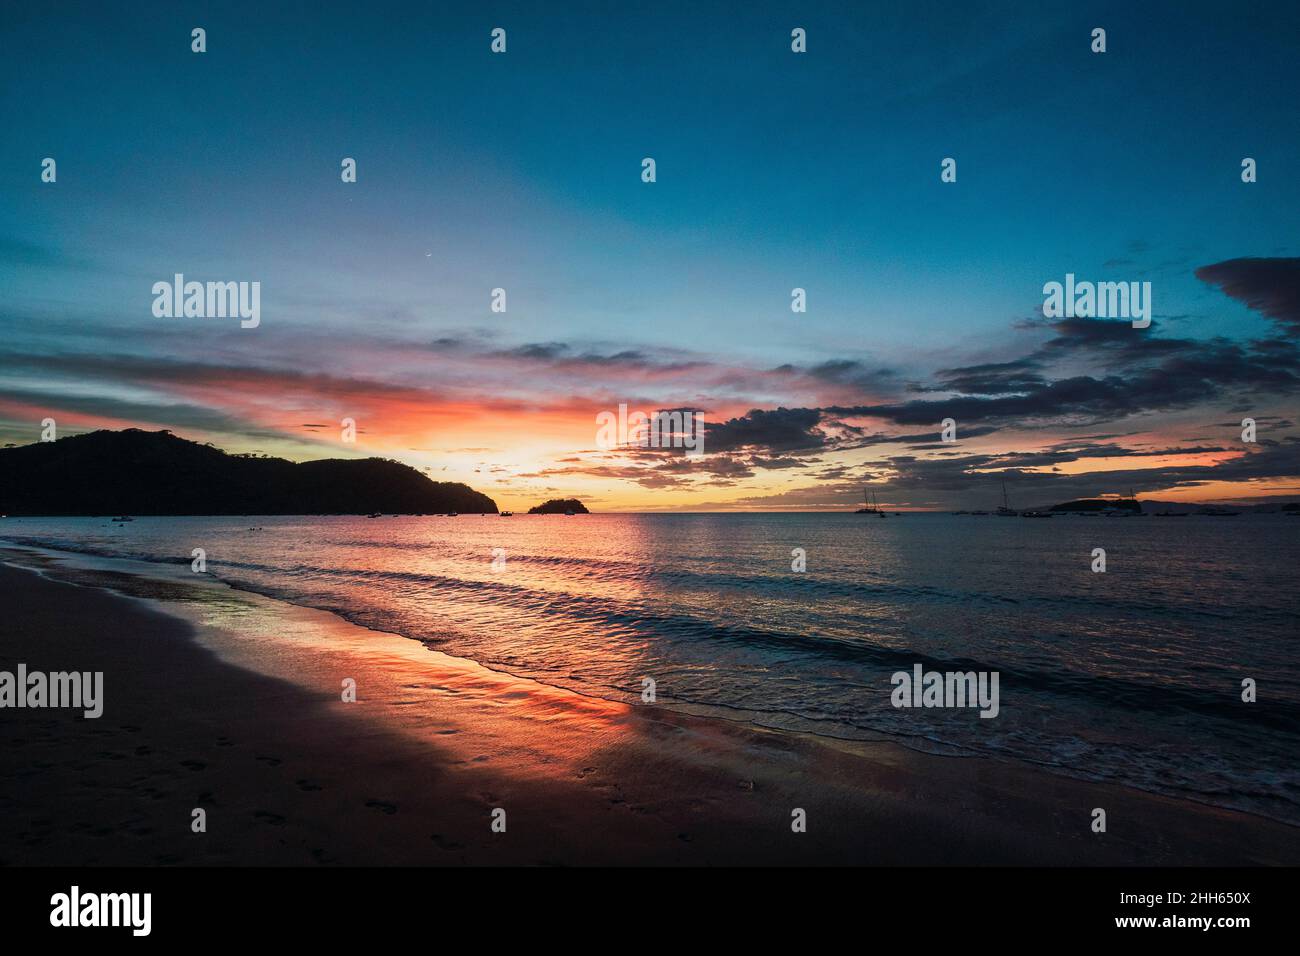 Scenic sky over Del Coco beach at sunset, Guanacaste Province, Costa Rica Stock Photo